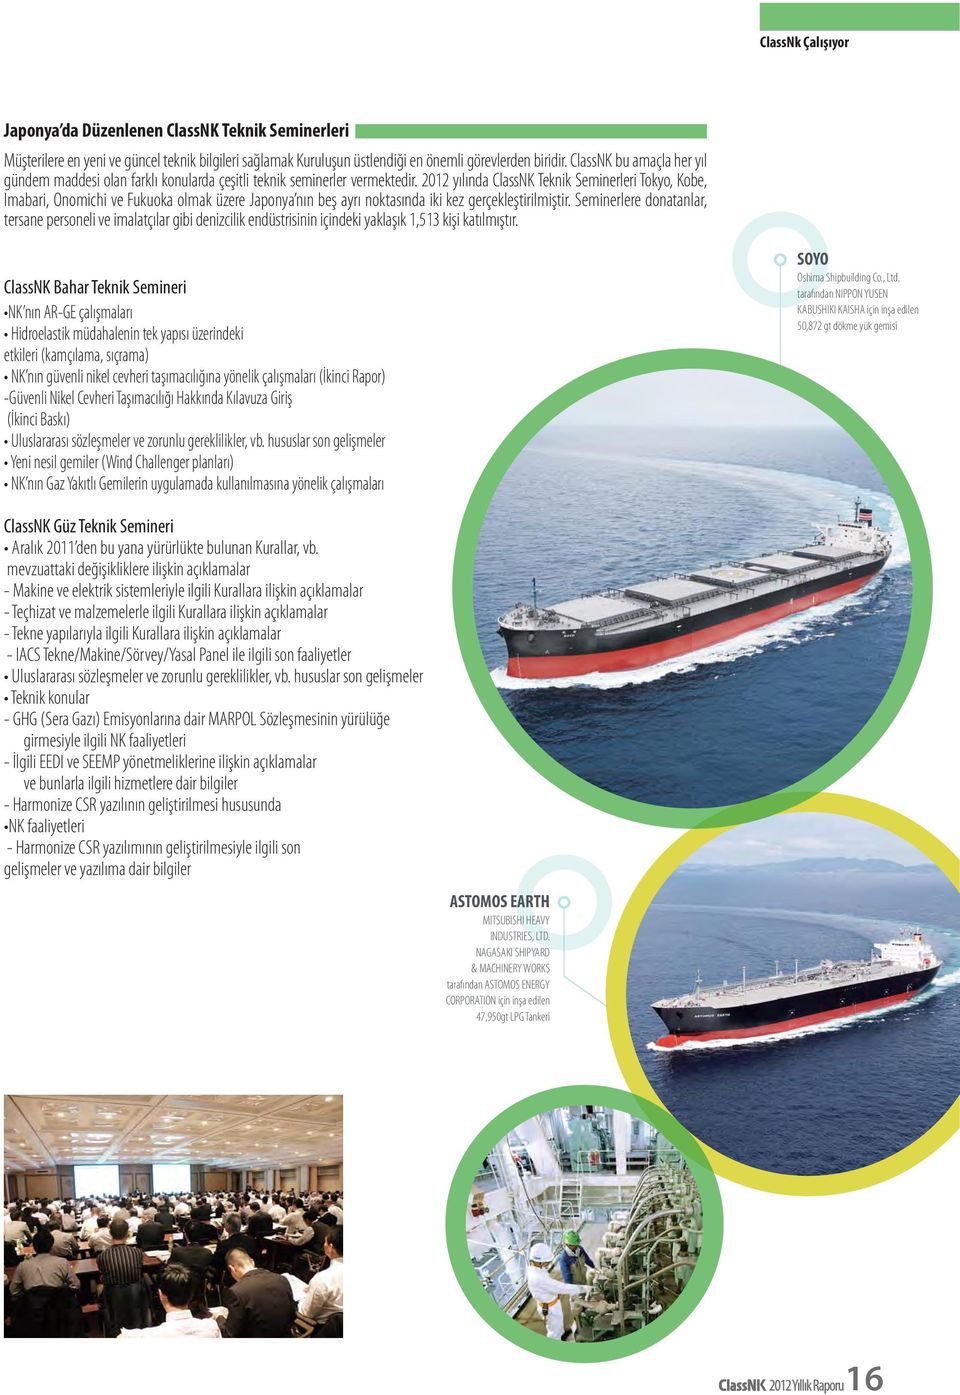 -Güvenli Nikel Cevheri Taşımacılığı Hakkında Kılavuza Giriş SOYO 50,872 gt dökme yük gemisi mevzuattaki değişikliklere ilişkin açıklamalar - Teçhizat ve malzemelerle ilgili Kurallara ilişkin